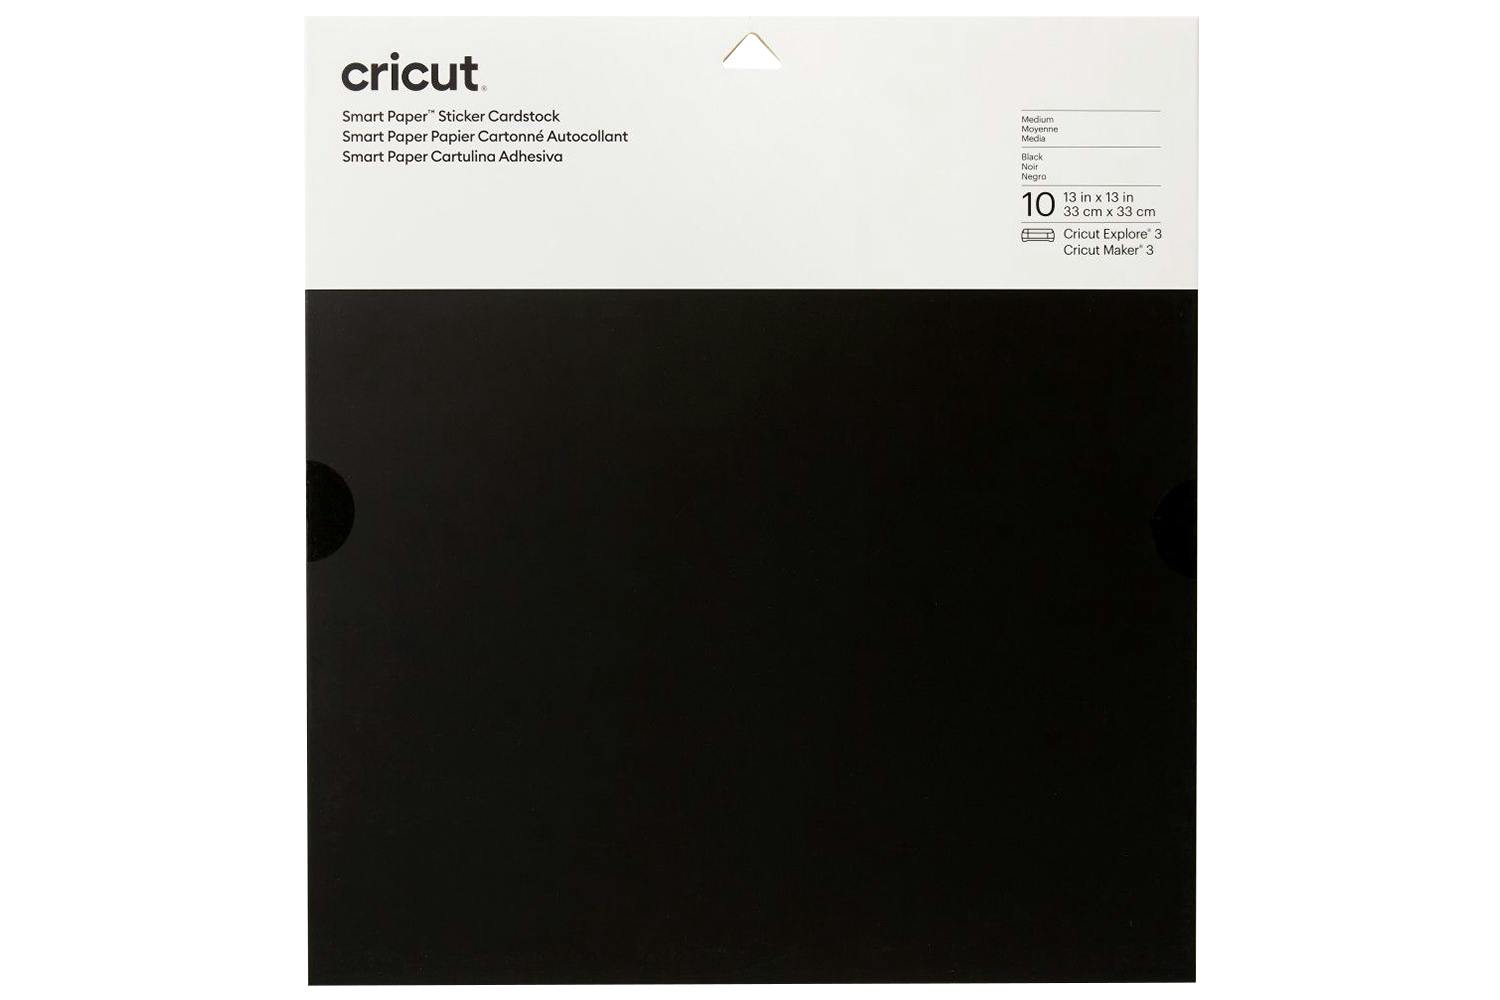 Cricut 13" x 13" Sticker Cardstock Smart Paper |10 Sheet